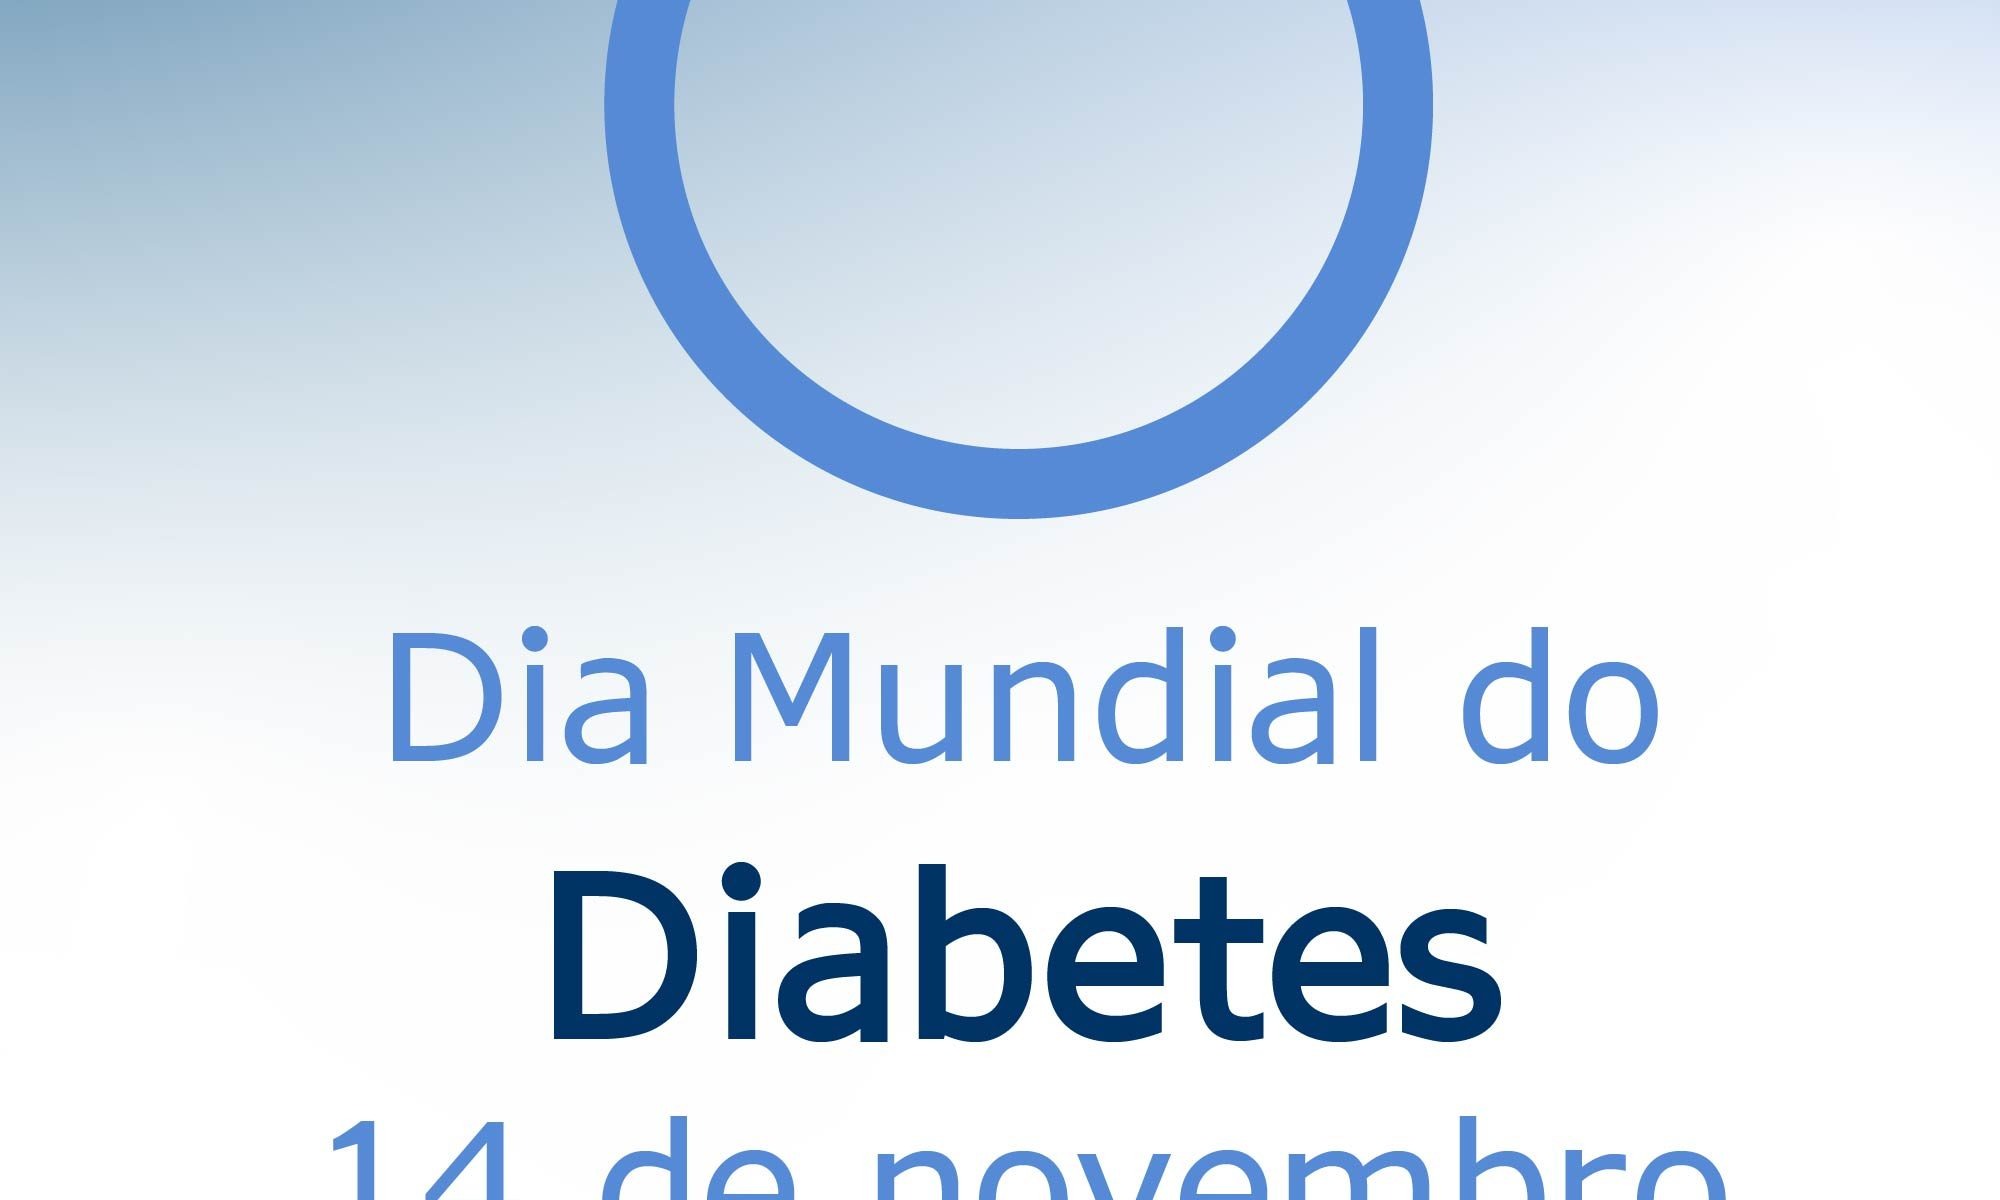 imagem de fundo azul claro e branco. Há um círuclo azul claro, símbolo do novembro azul do Diabetes e está escrito Dia Mundial do Diabetes 14 de novembro. Há as logos da retina brasil e na novartis